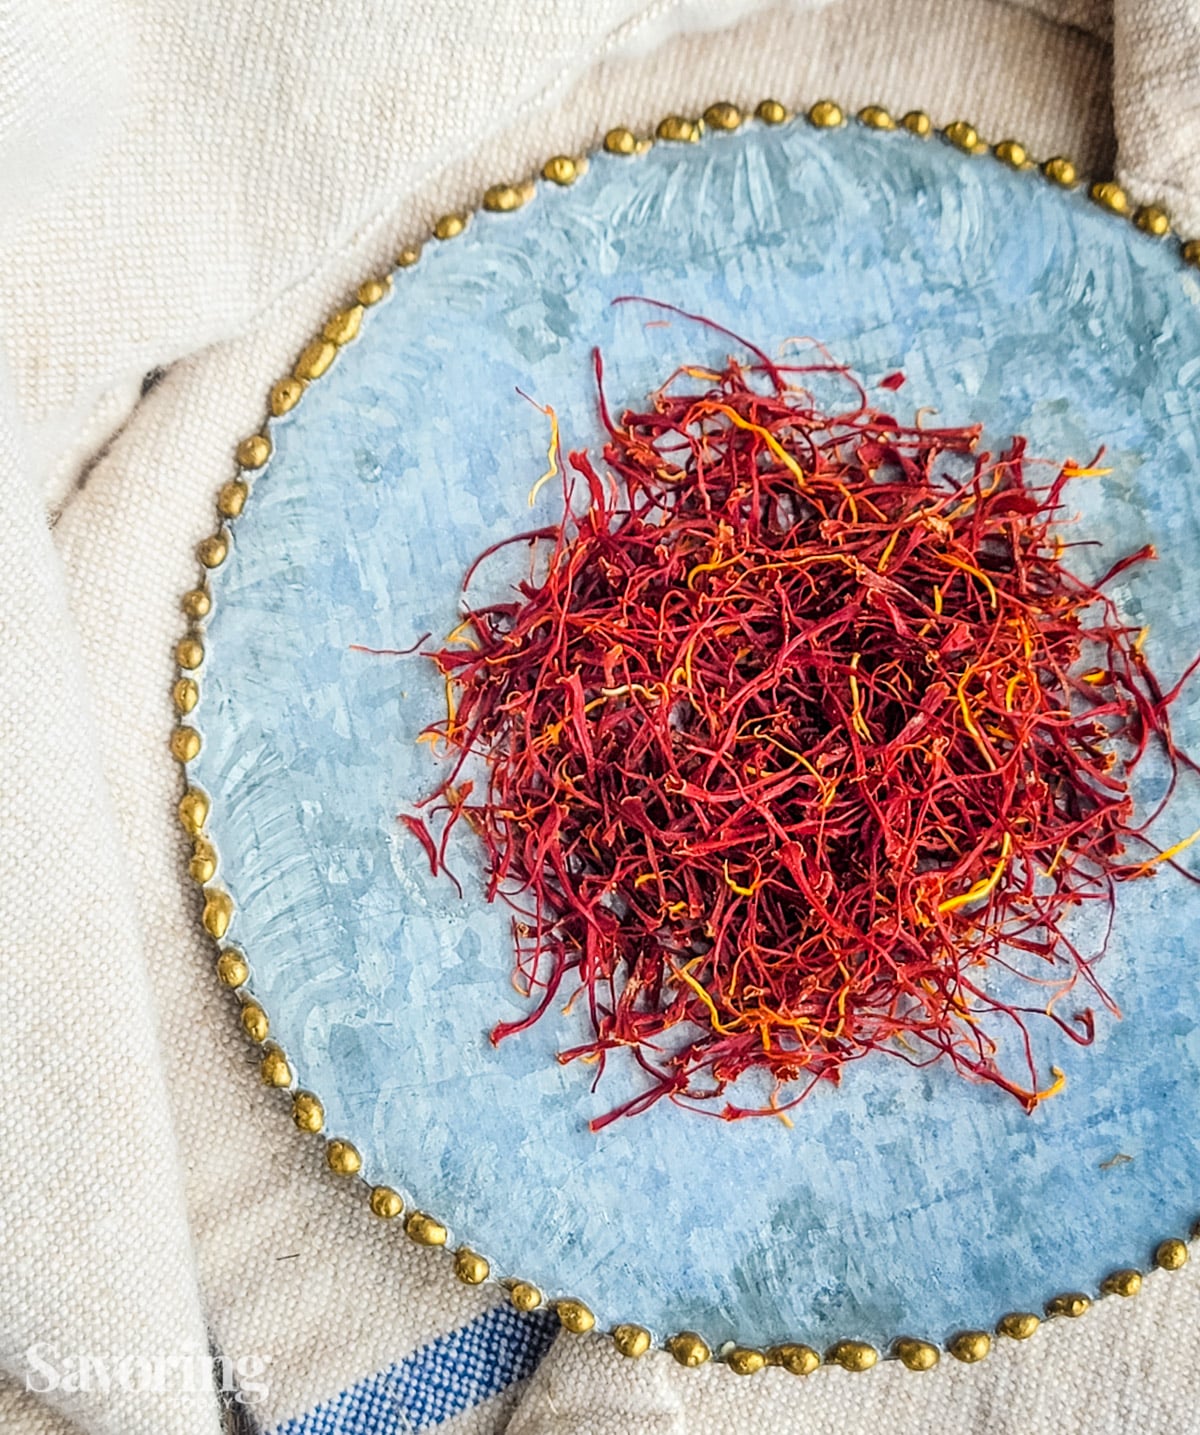 saffron threads on a blue saucer